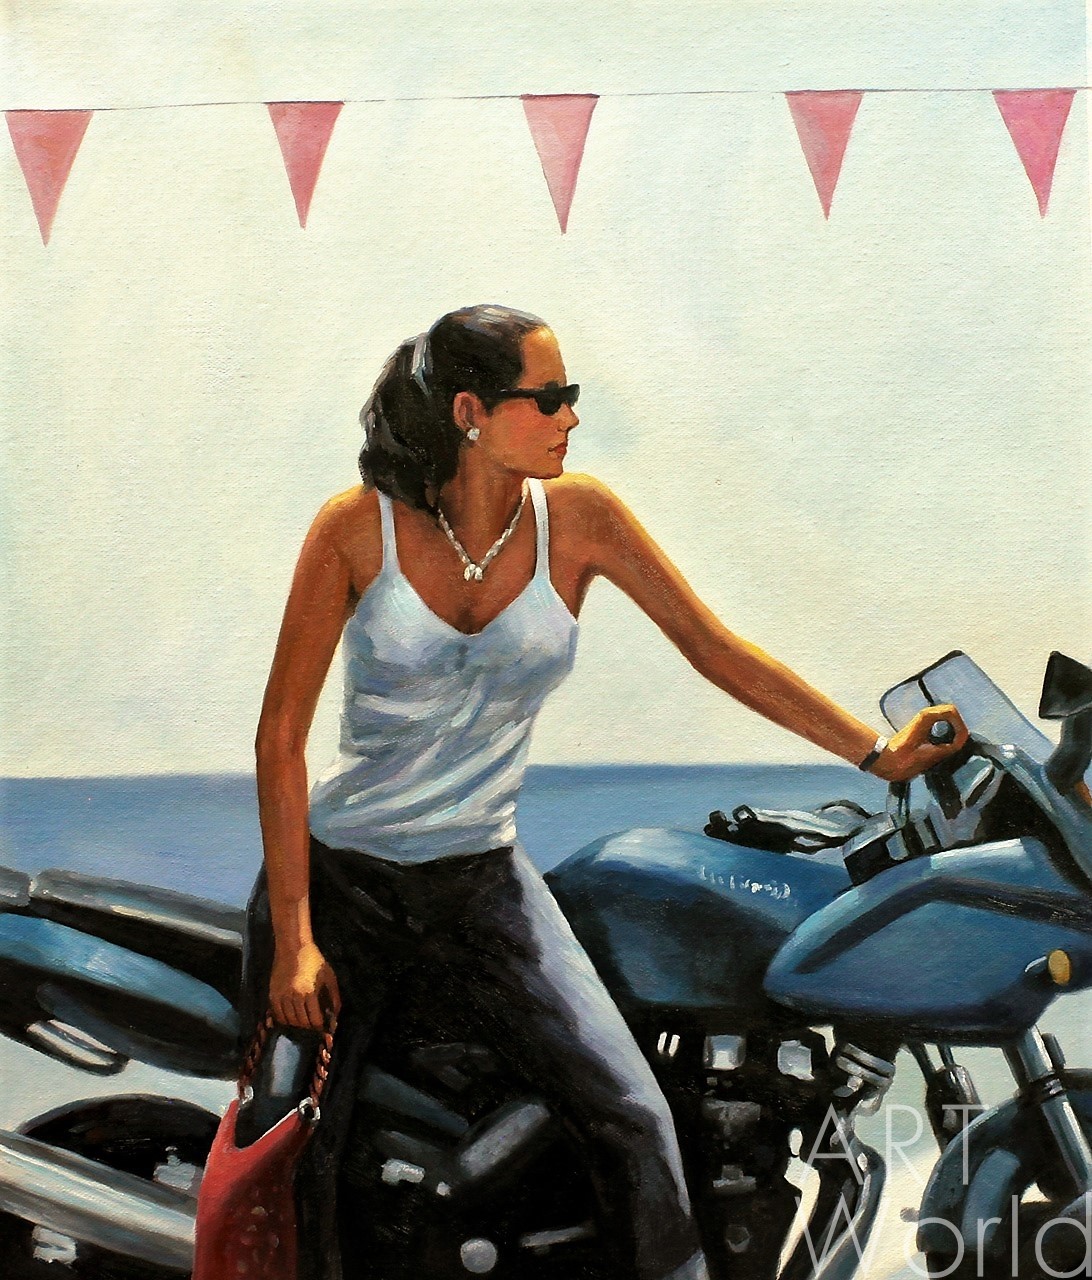 картина масло холст Копия картины Джека Веттриано "La fille la moto", худ. С.Камский, Веттриано Джек Артворлд.ру